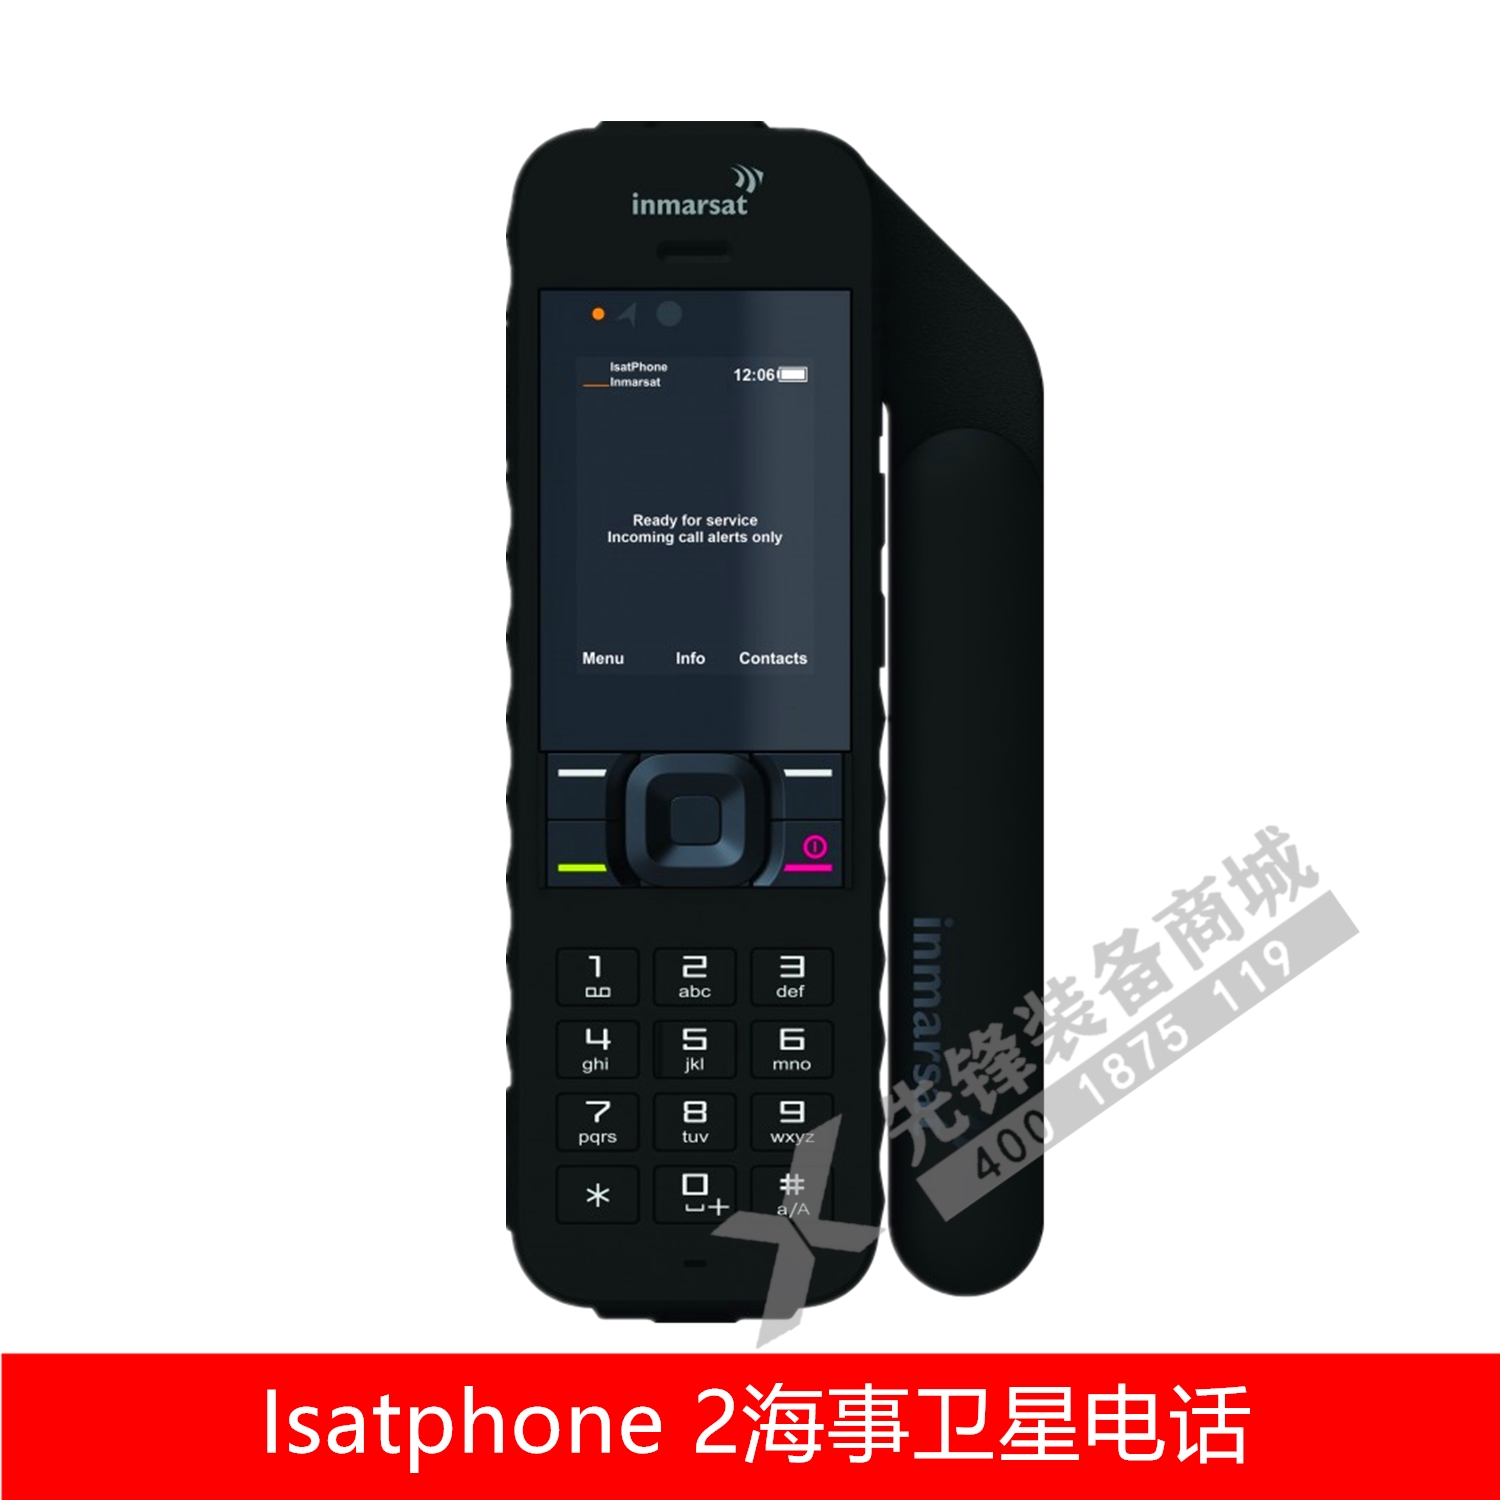 海事卫星电话二代IsatPhone2 海事2代简体中文先锋装备商城